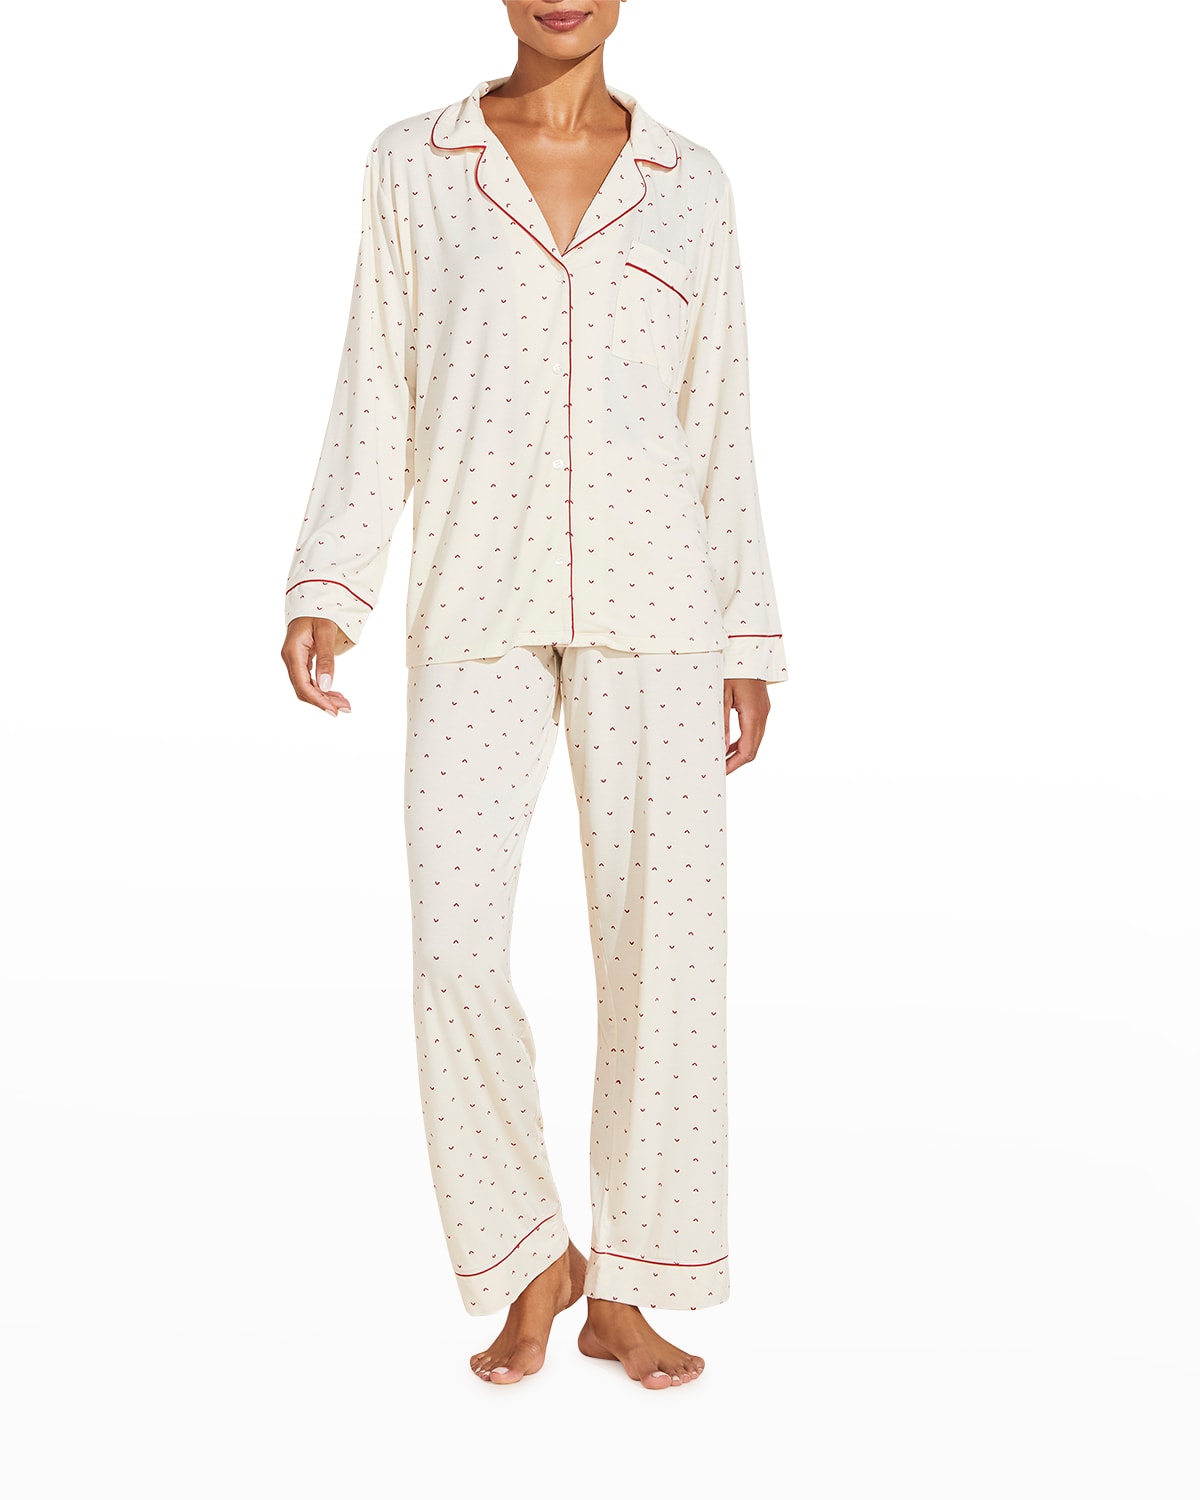 Eberjey Sleep Chic Printed Pajama Set In Envelope Heart